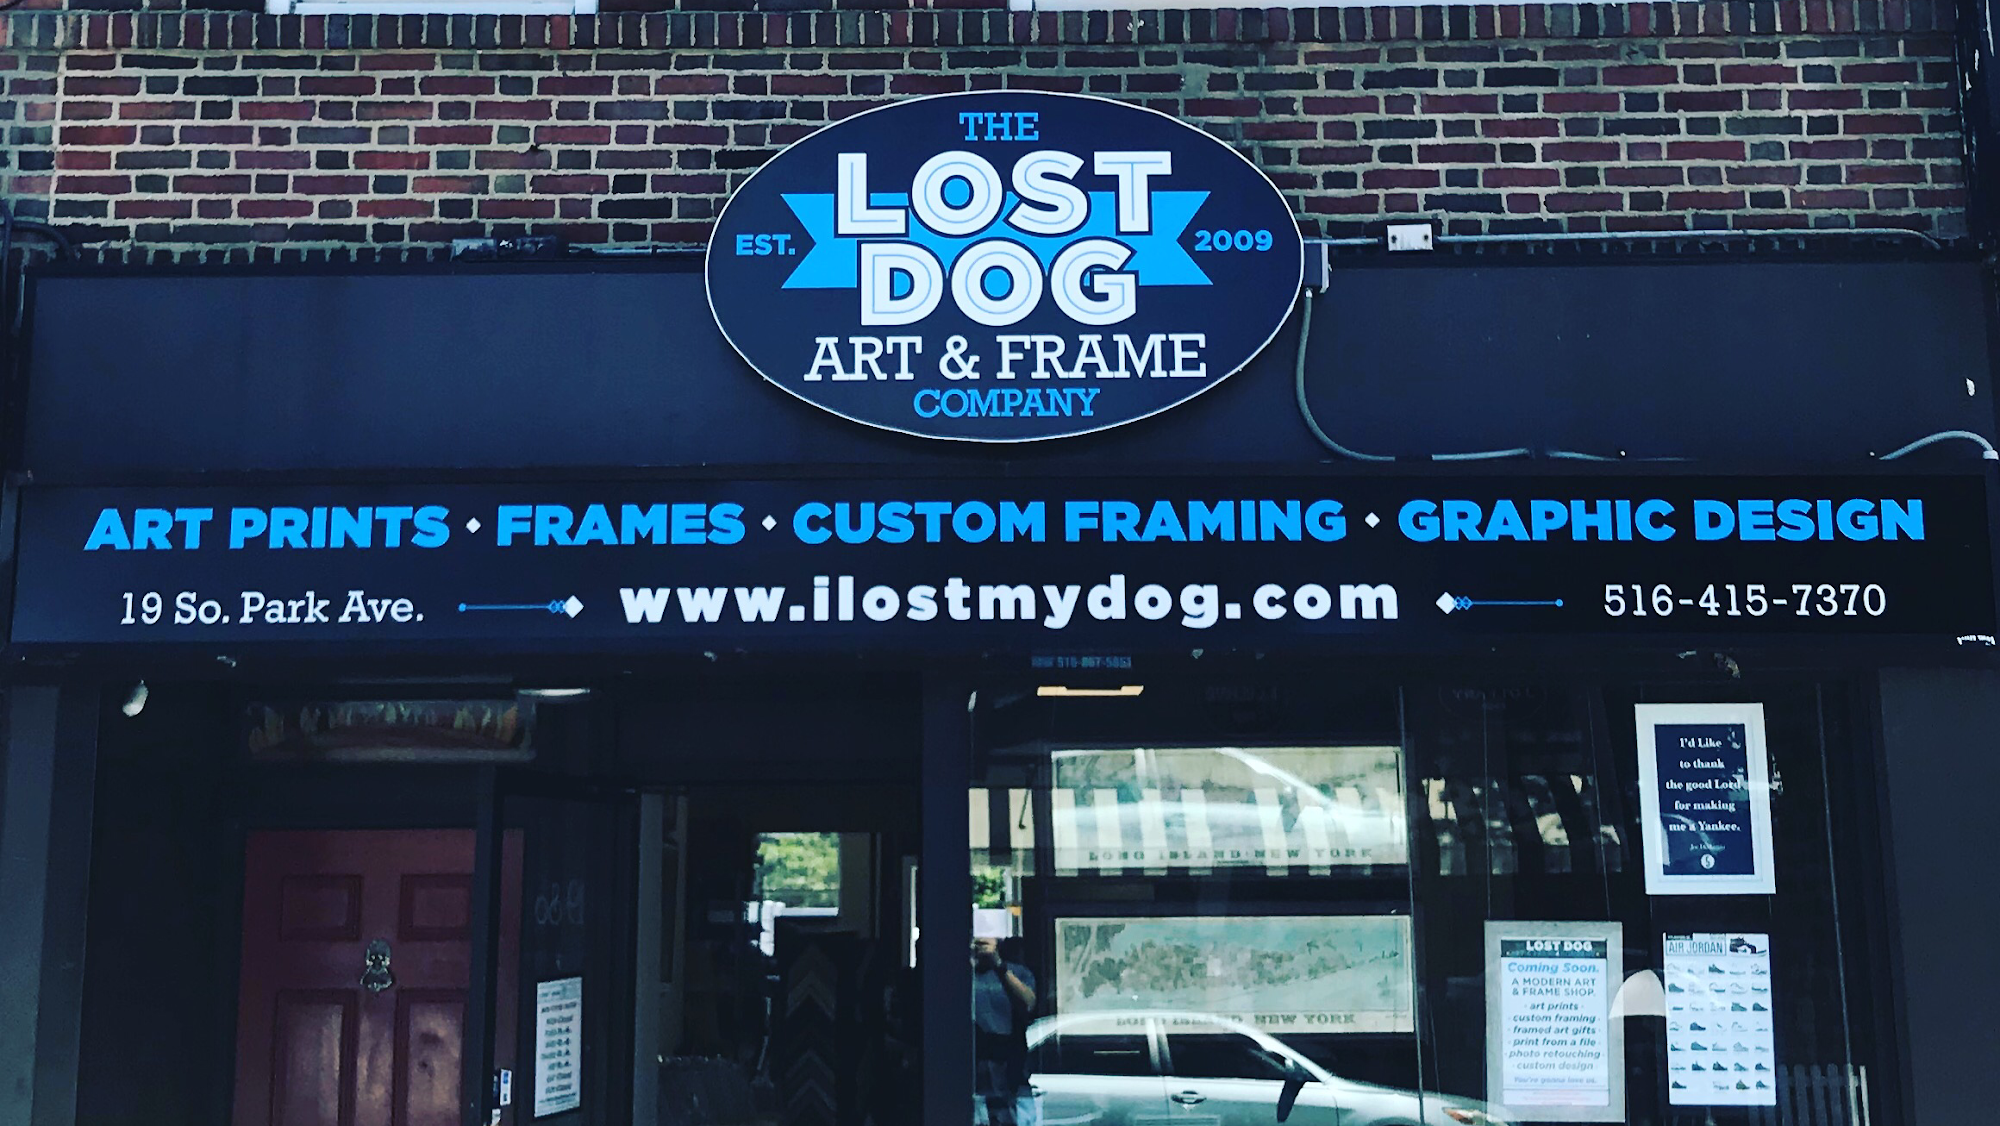 LOST DOG art & frame co.